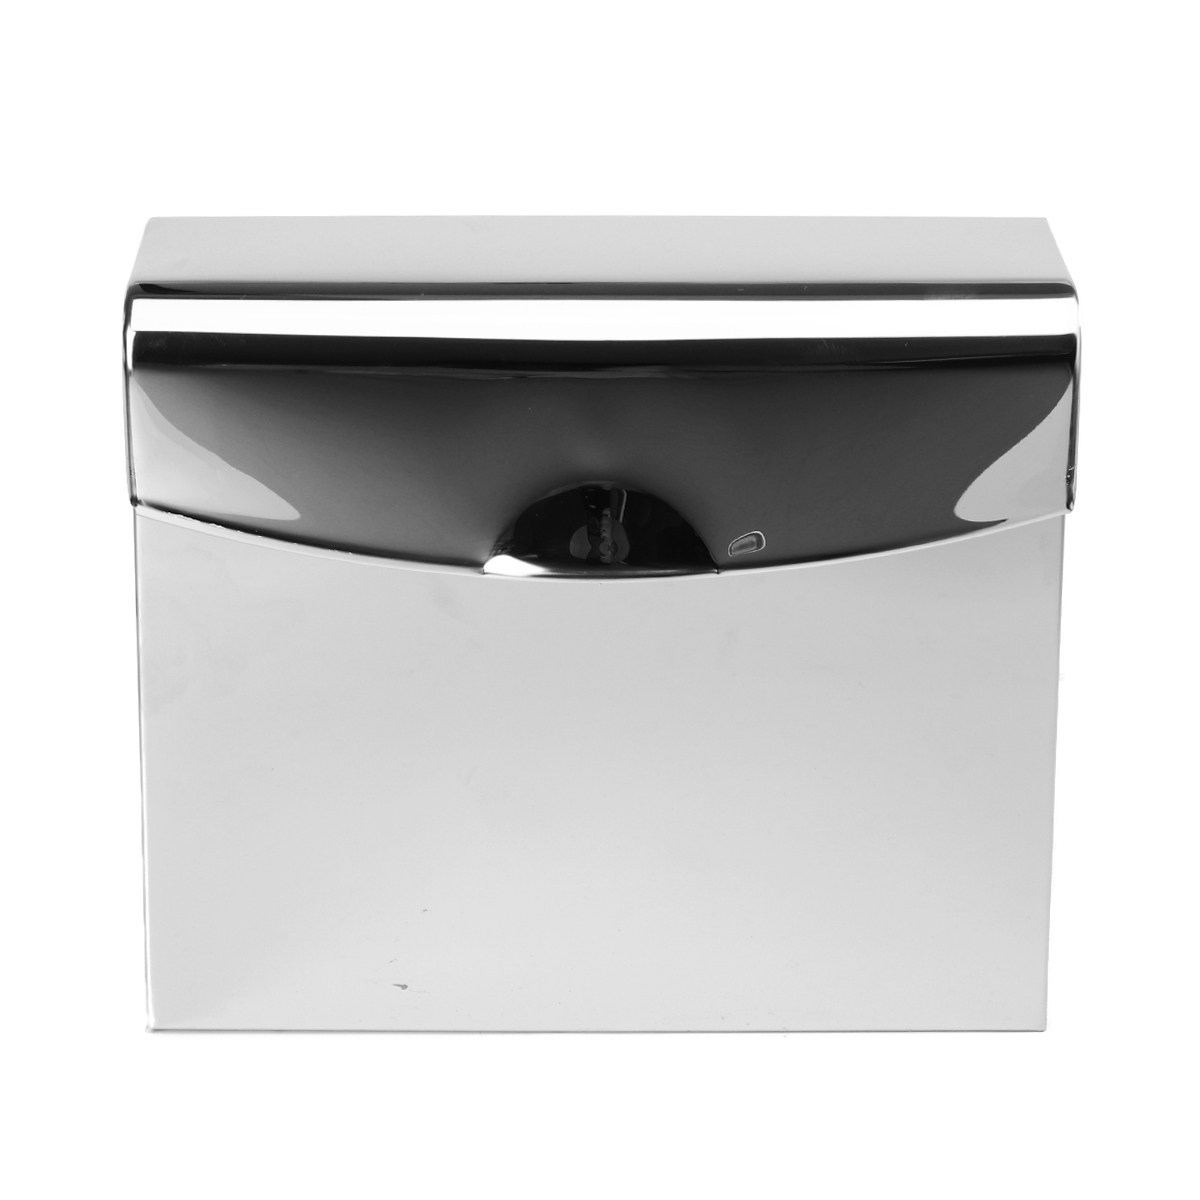 Stainless-Steel-Towel-Dispenser-Toilet-Paper-Holder-Kitchen-Bath-Shelf-Holder-1627018-5